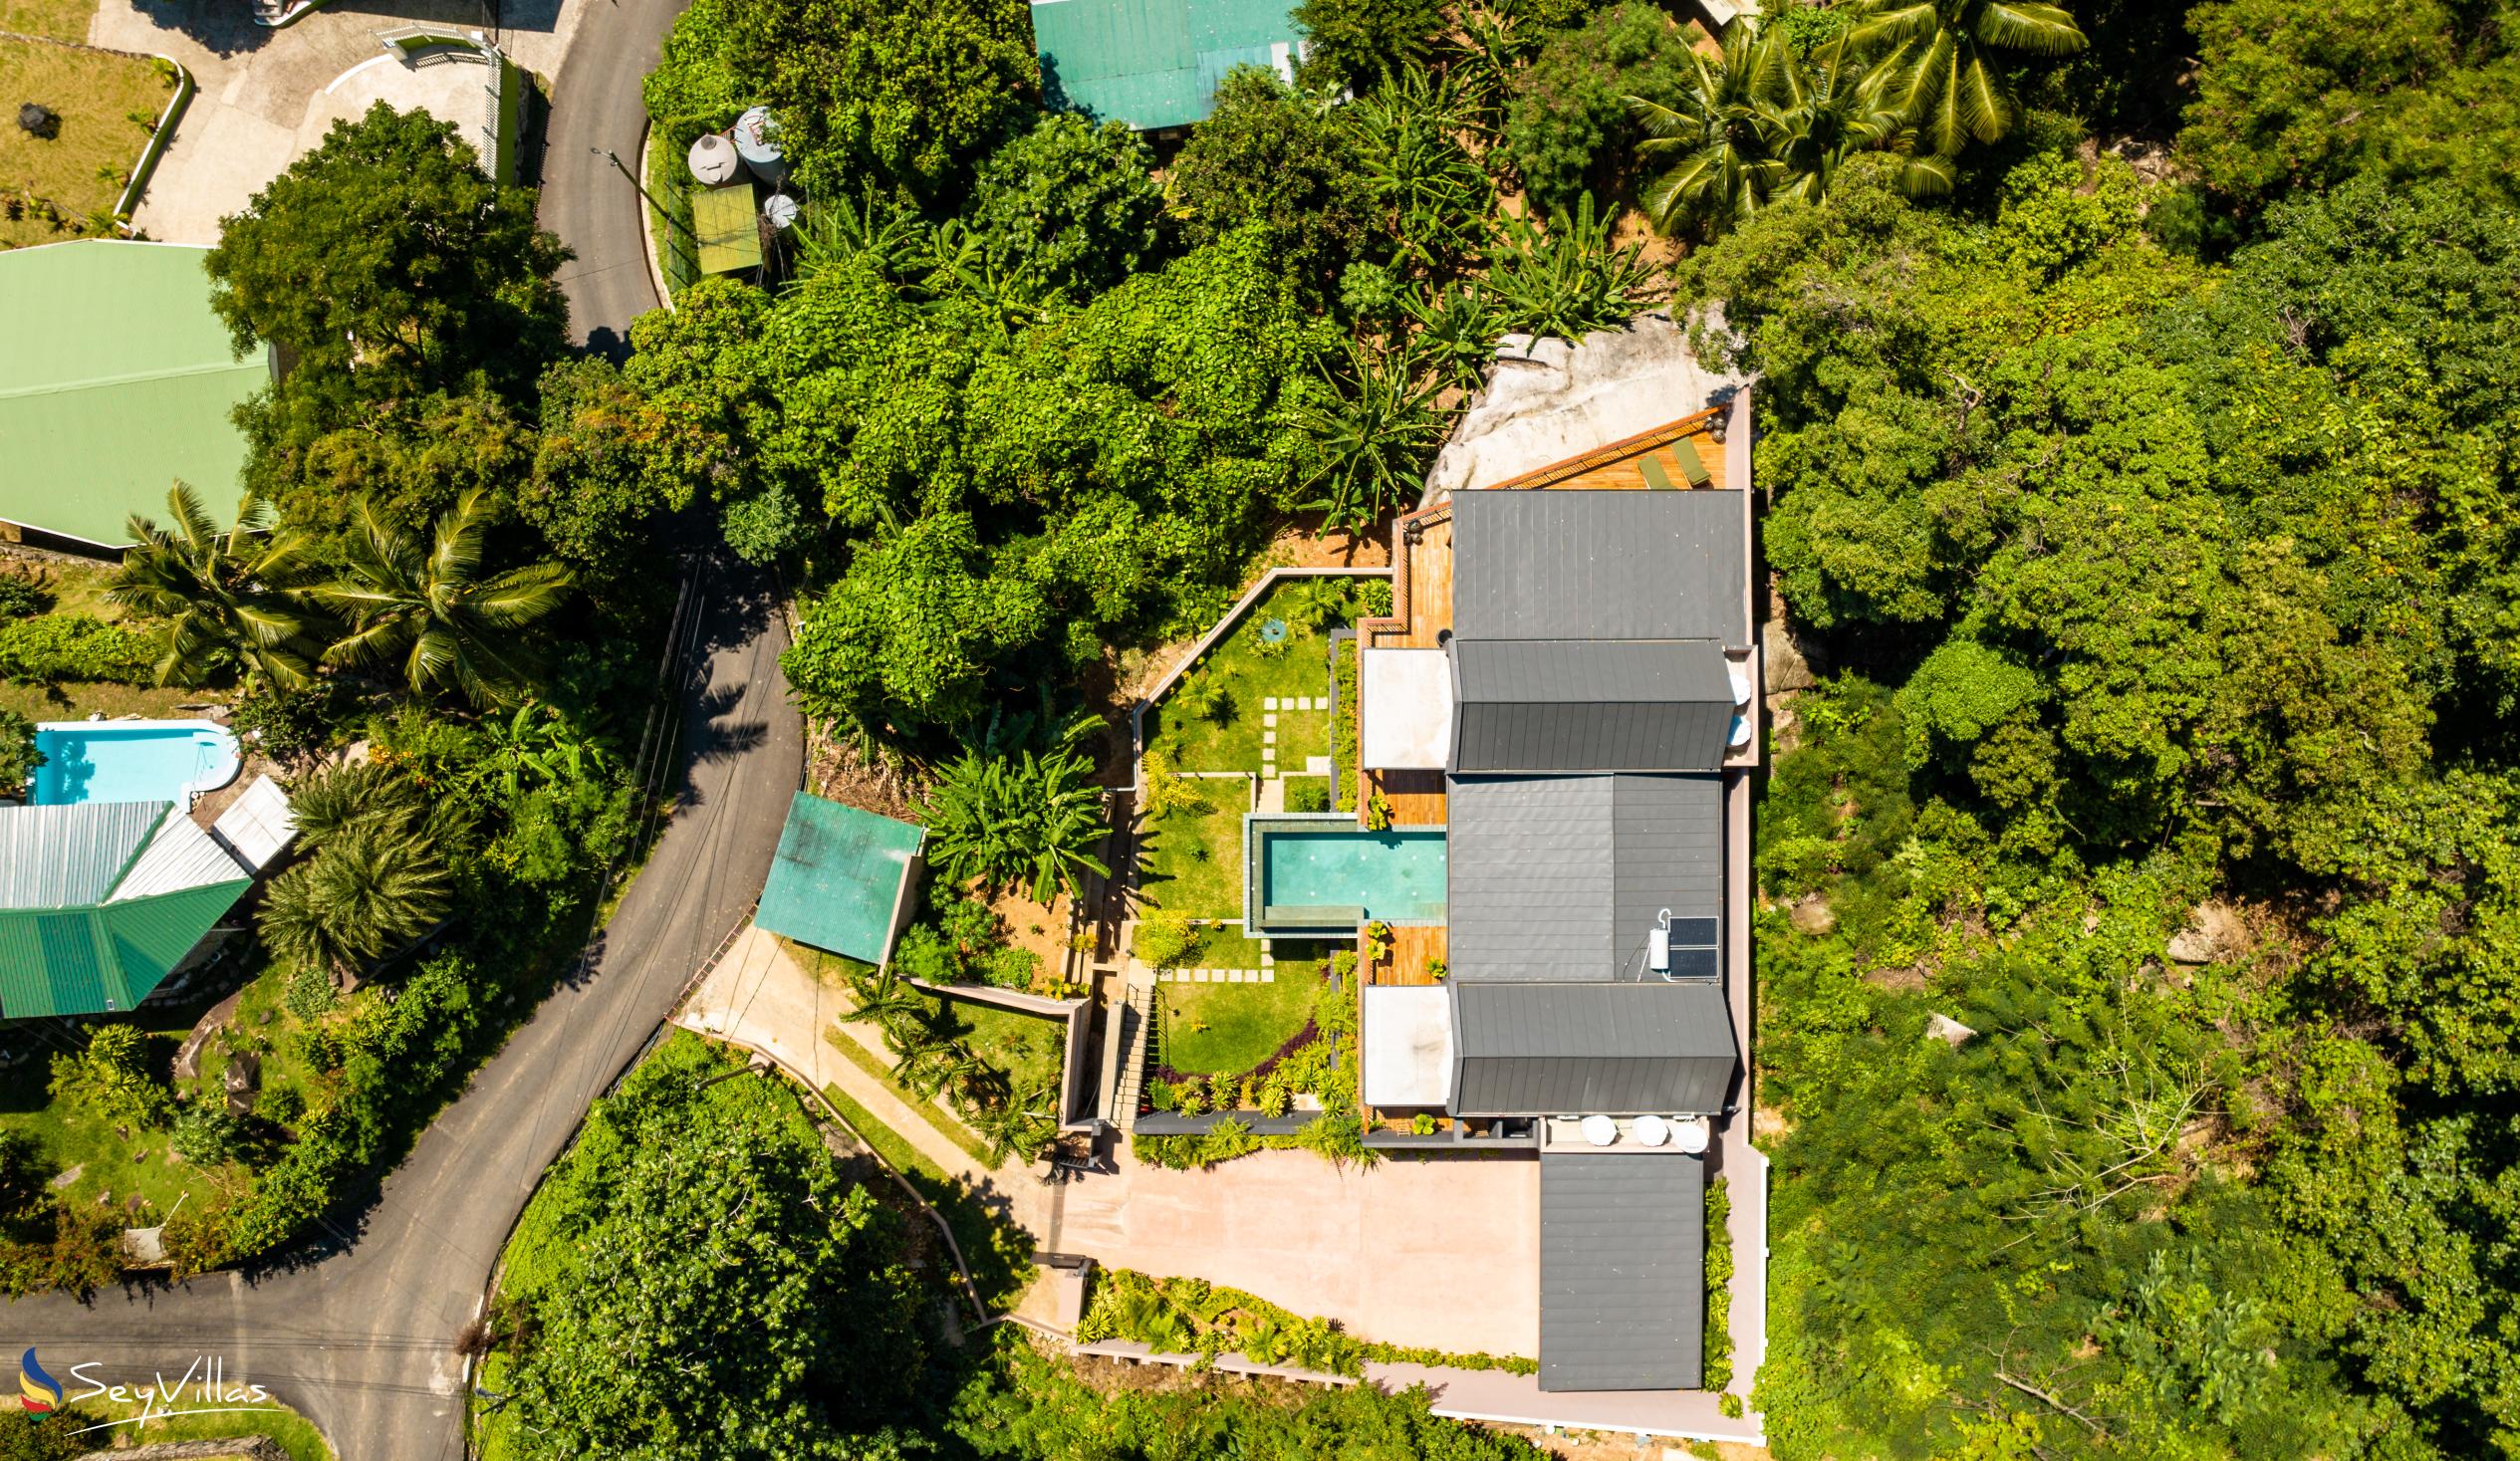 Foto 13: Maison Gaia - Extérieur - Mahé (Seychelles)